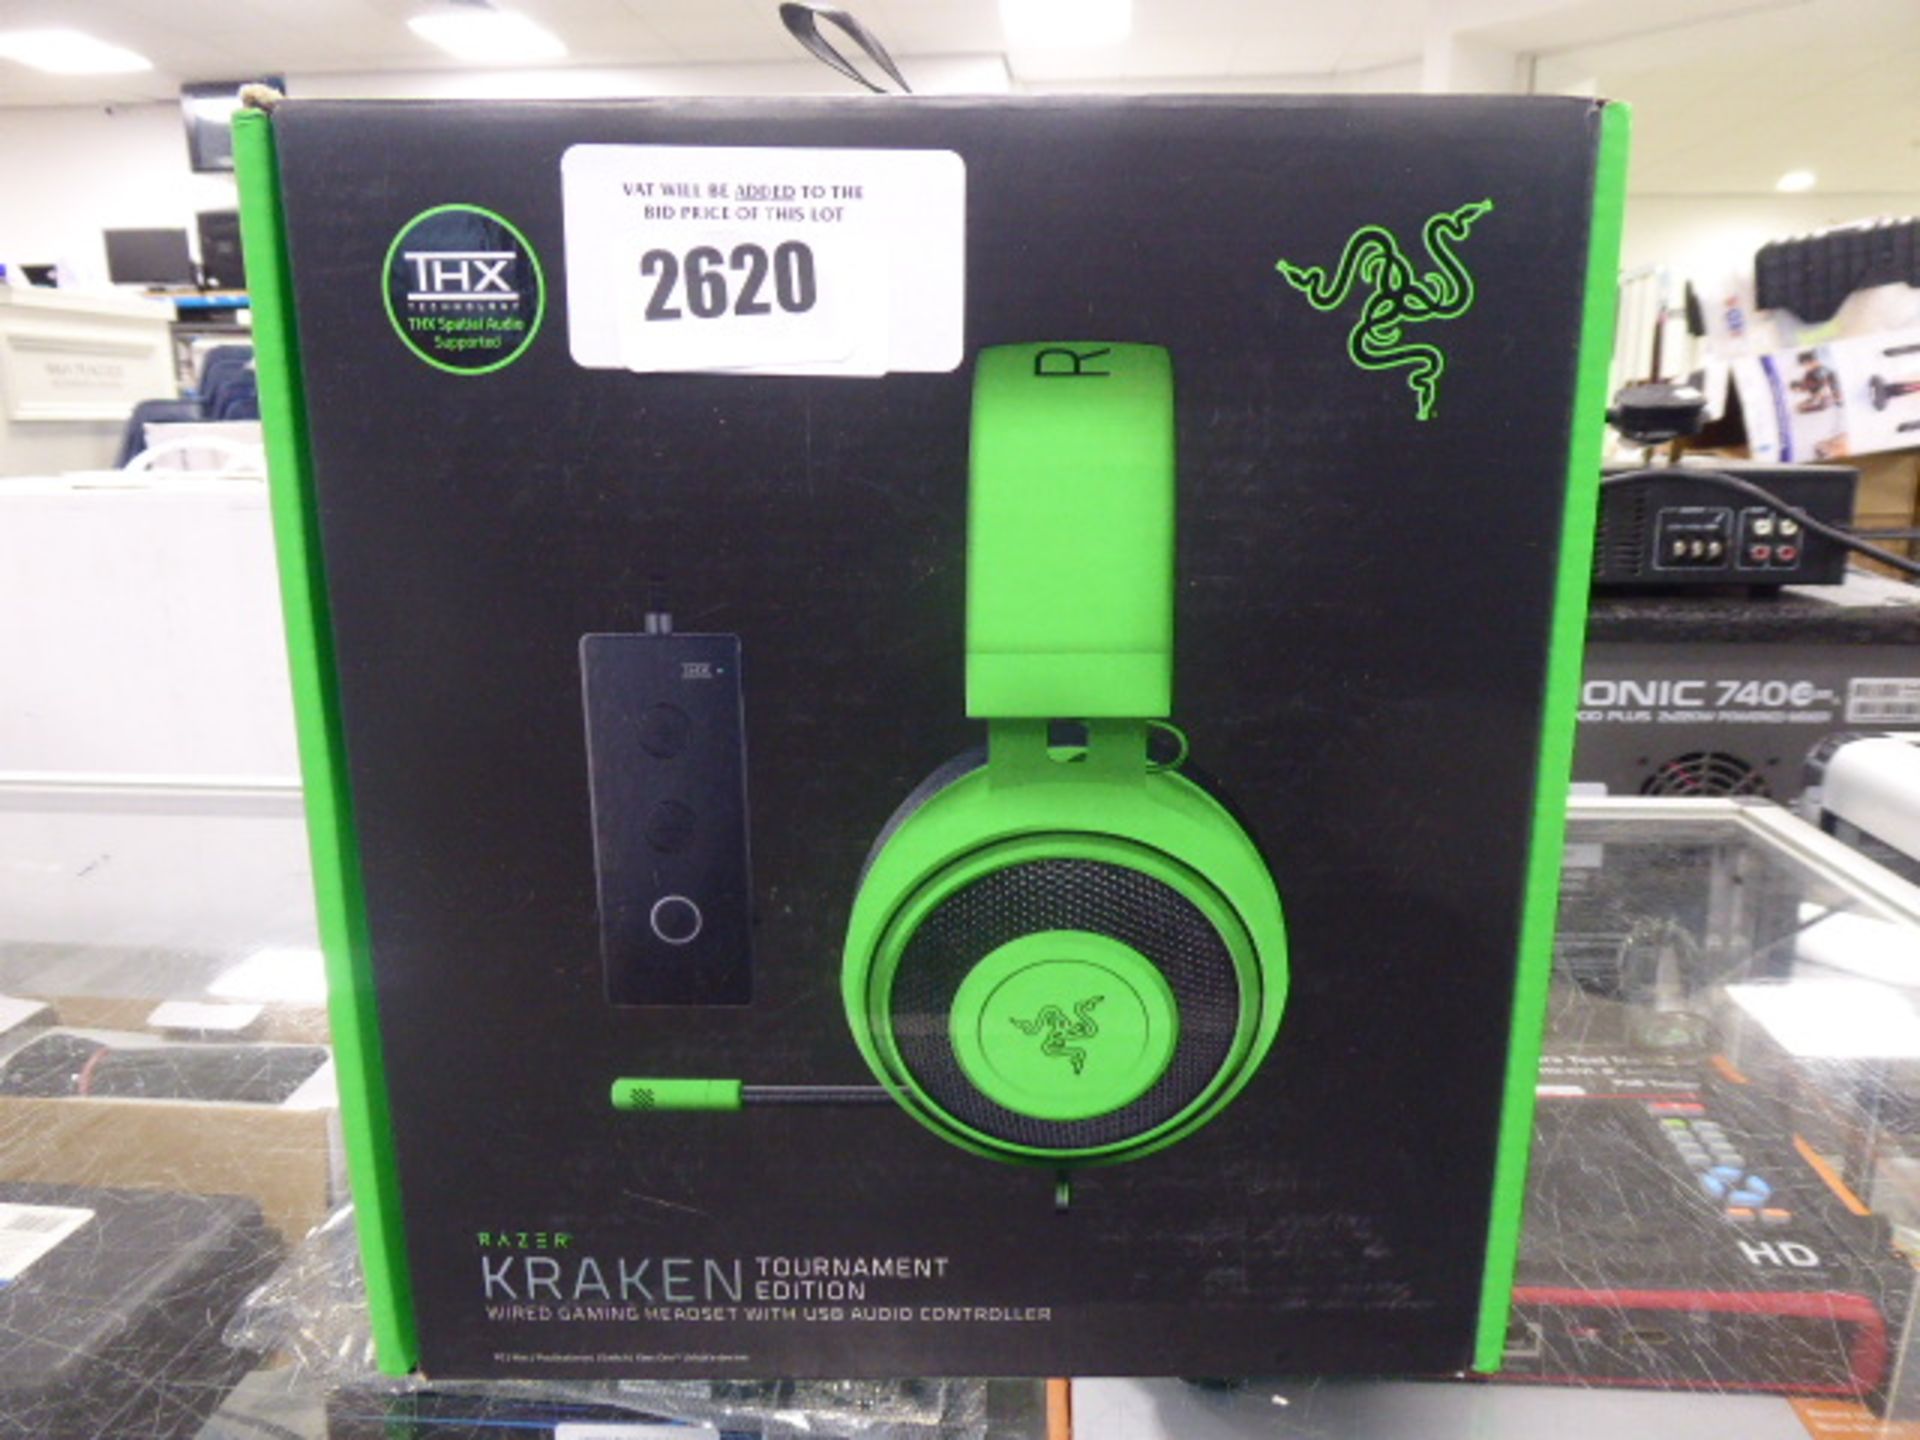 2164 Razer Kraken gaming headset with damaged mic input cable